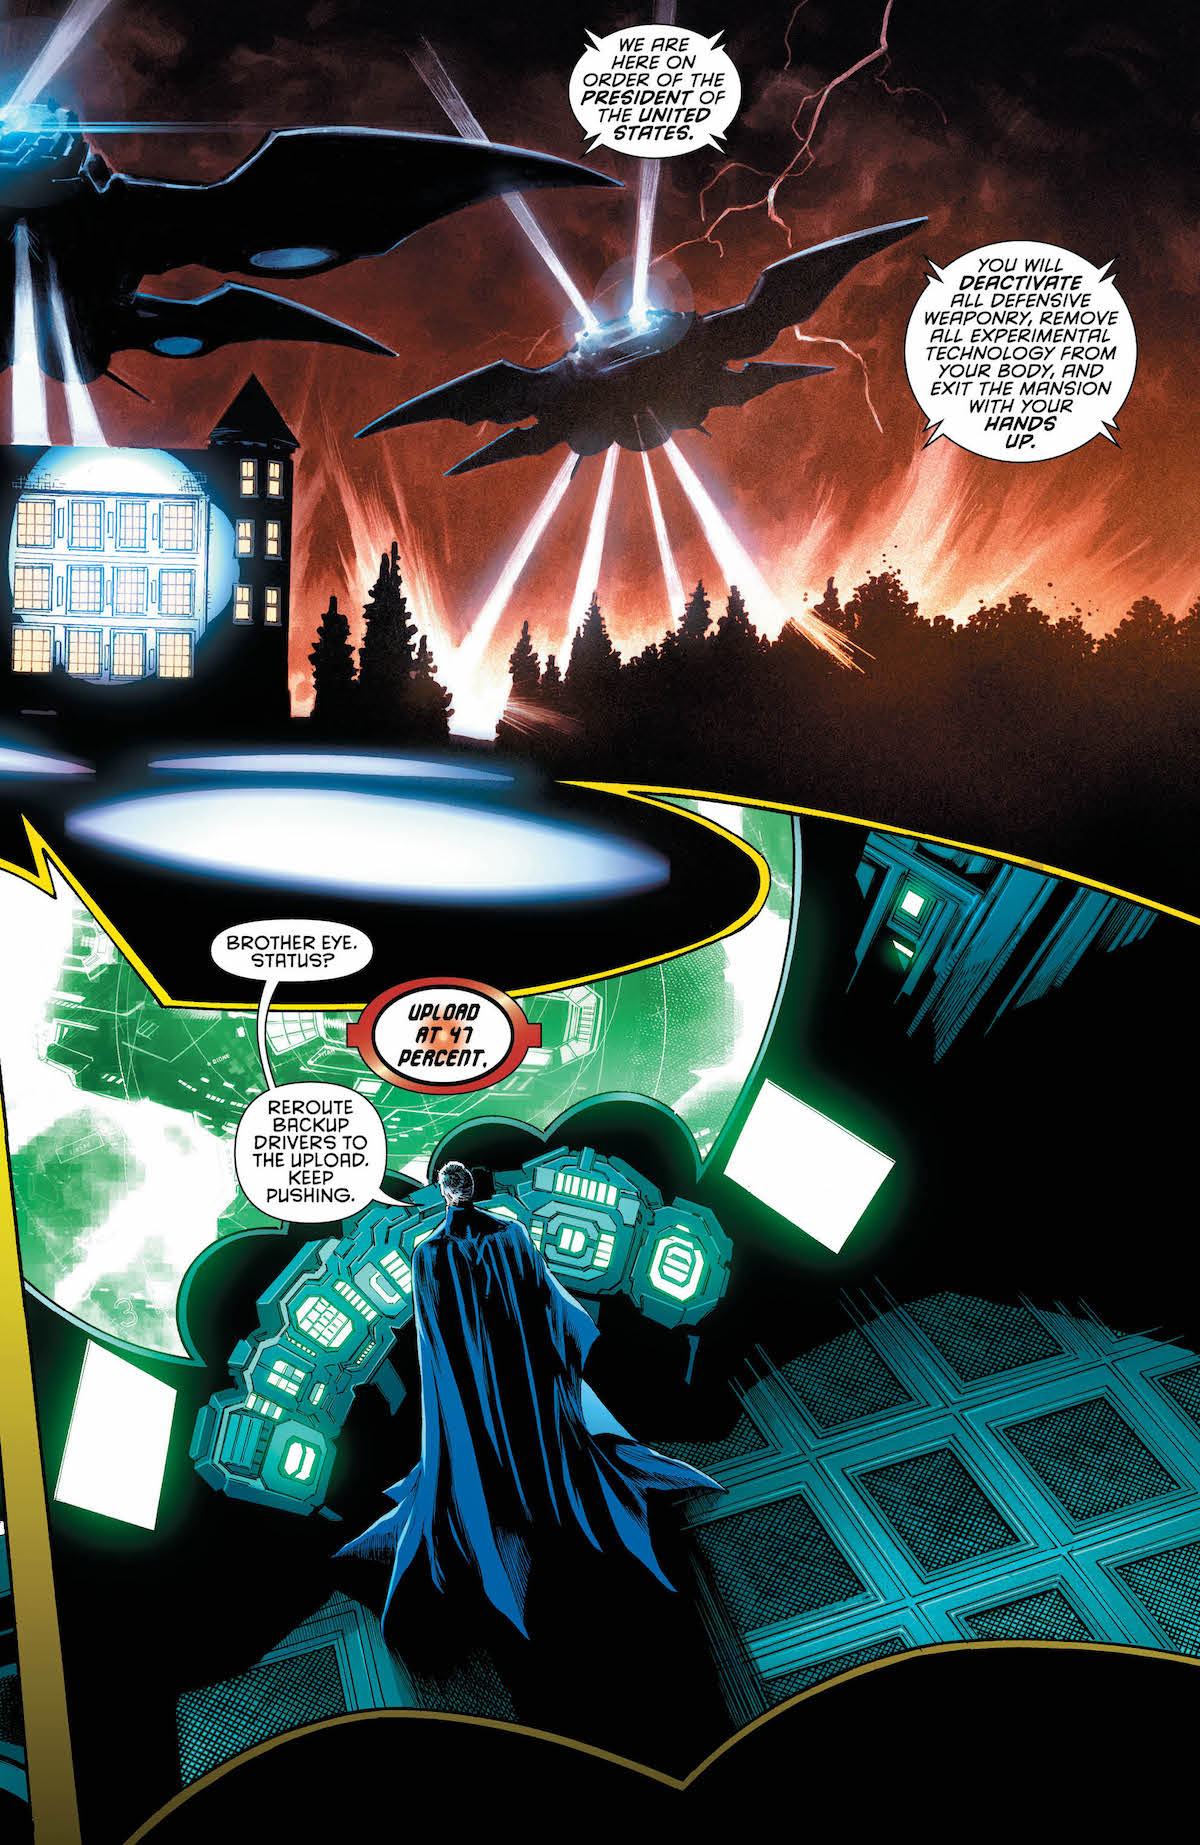 Detective Comics #977